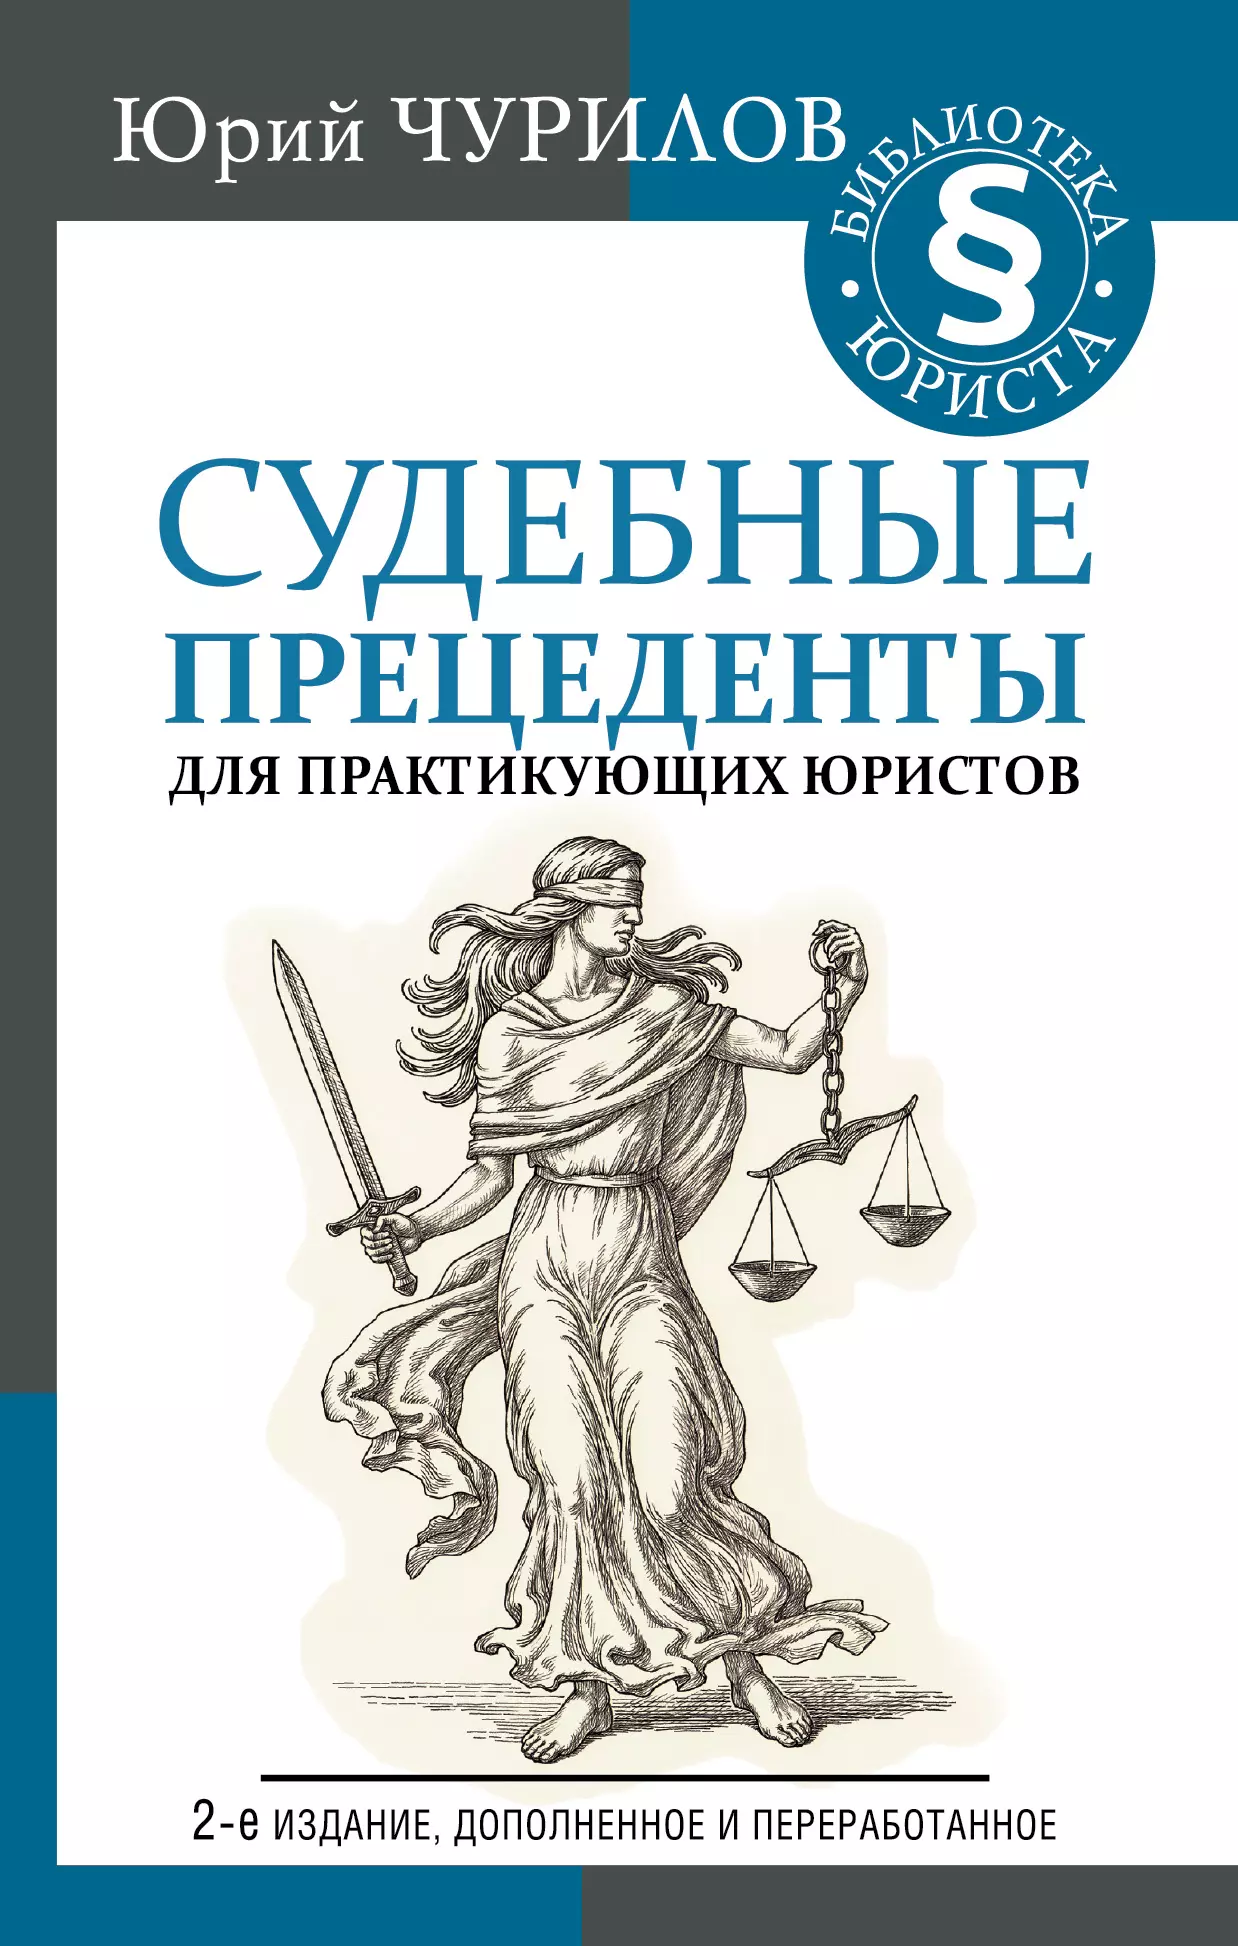 Чурилов Юрий Юрьевич - Судебные прецеденты для практикующих юристов